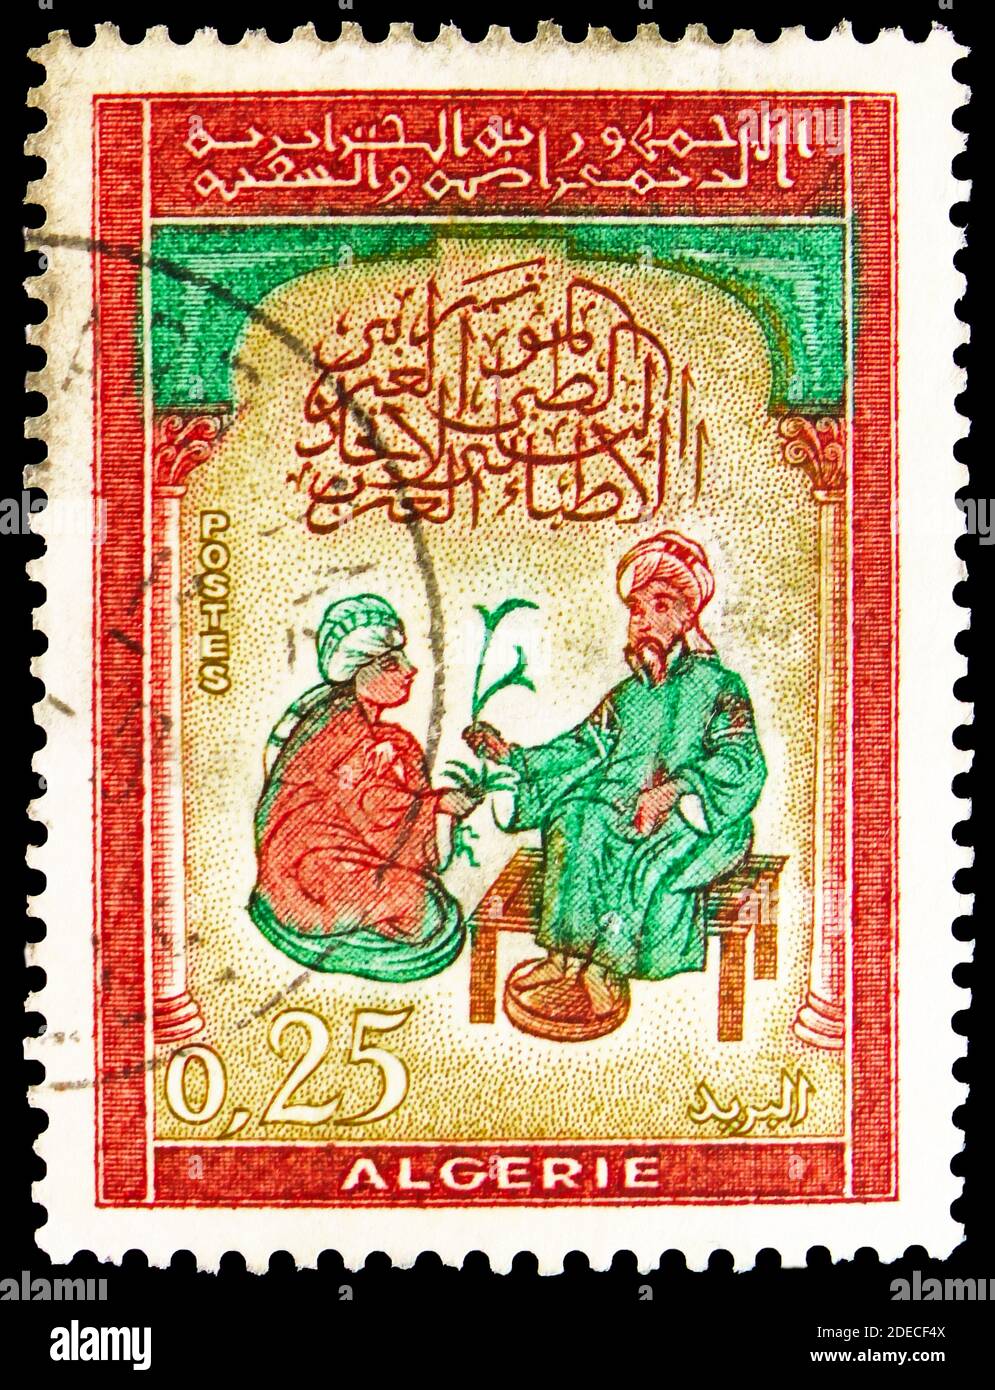 MOSCOU, RUSSIE - 17 OCTOBRE 2020: Timbre-poste imprimé en Algérie montre  les médecins du 13ème siècle manuscrit, 2ème Congrès de l'Union arabe des  médecins Photo Stock - Alamy